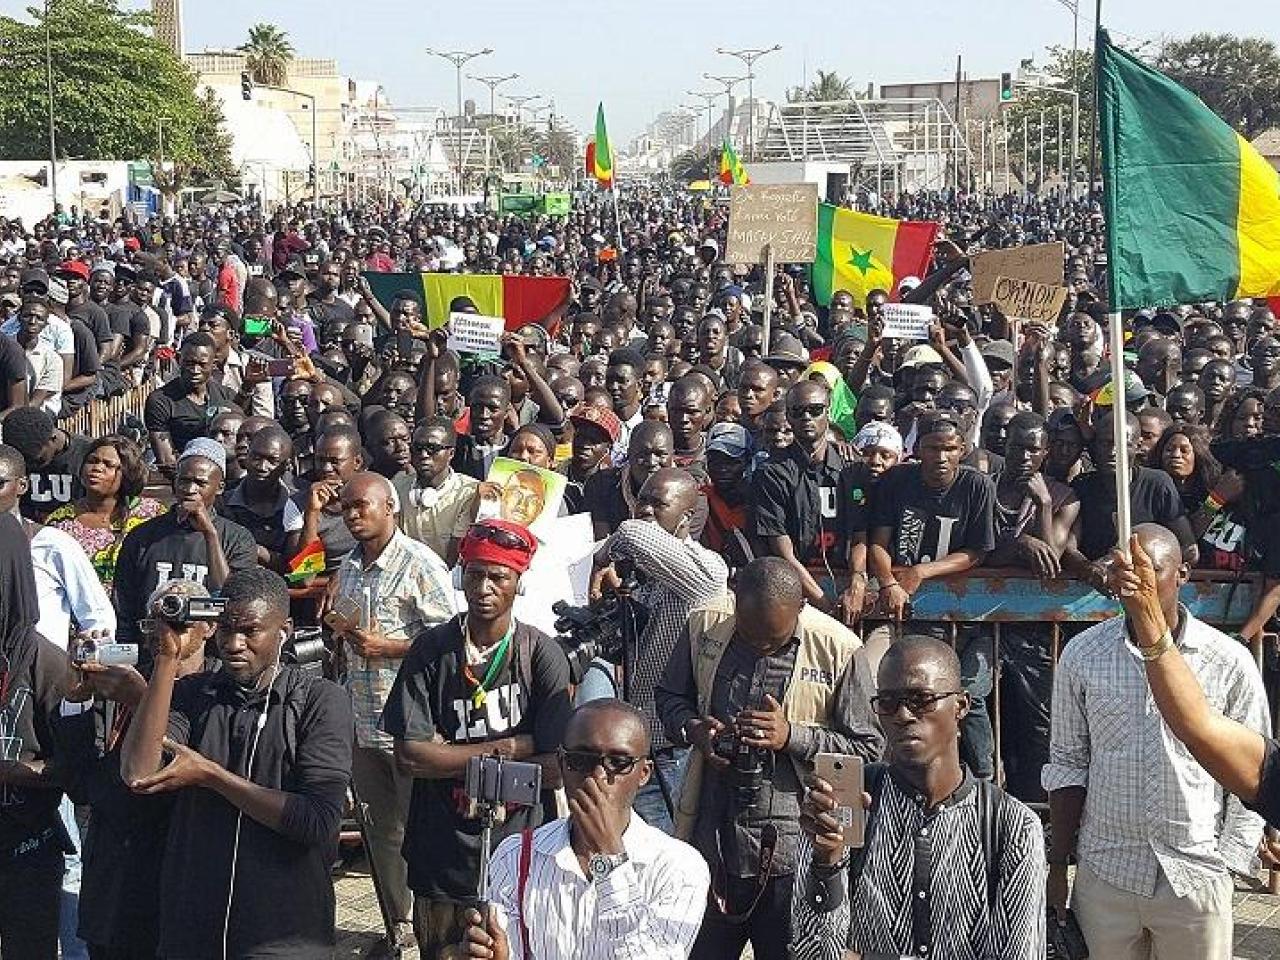 Sa mobilisation pacifique interdite : Le F24 prend acte et donne rendez-vous aux Sénégalais, ce samedi